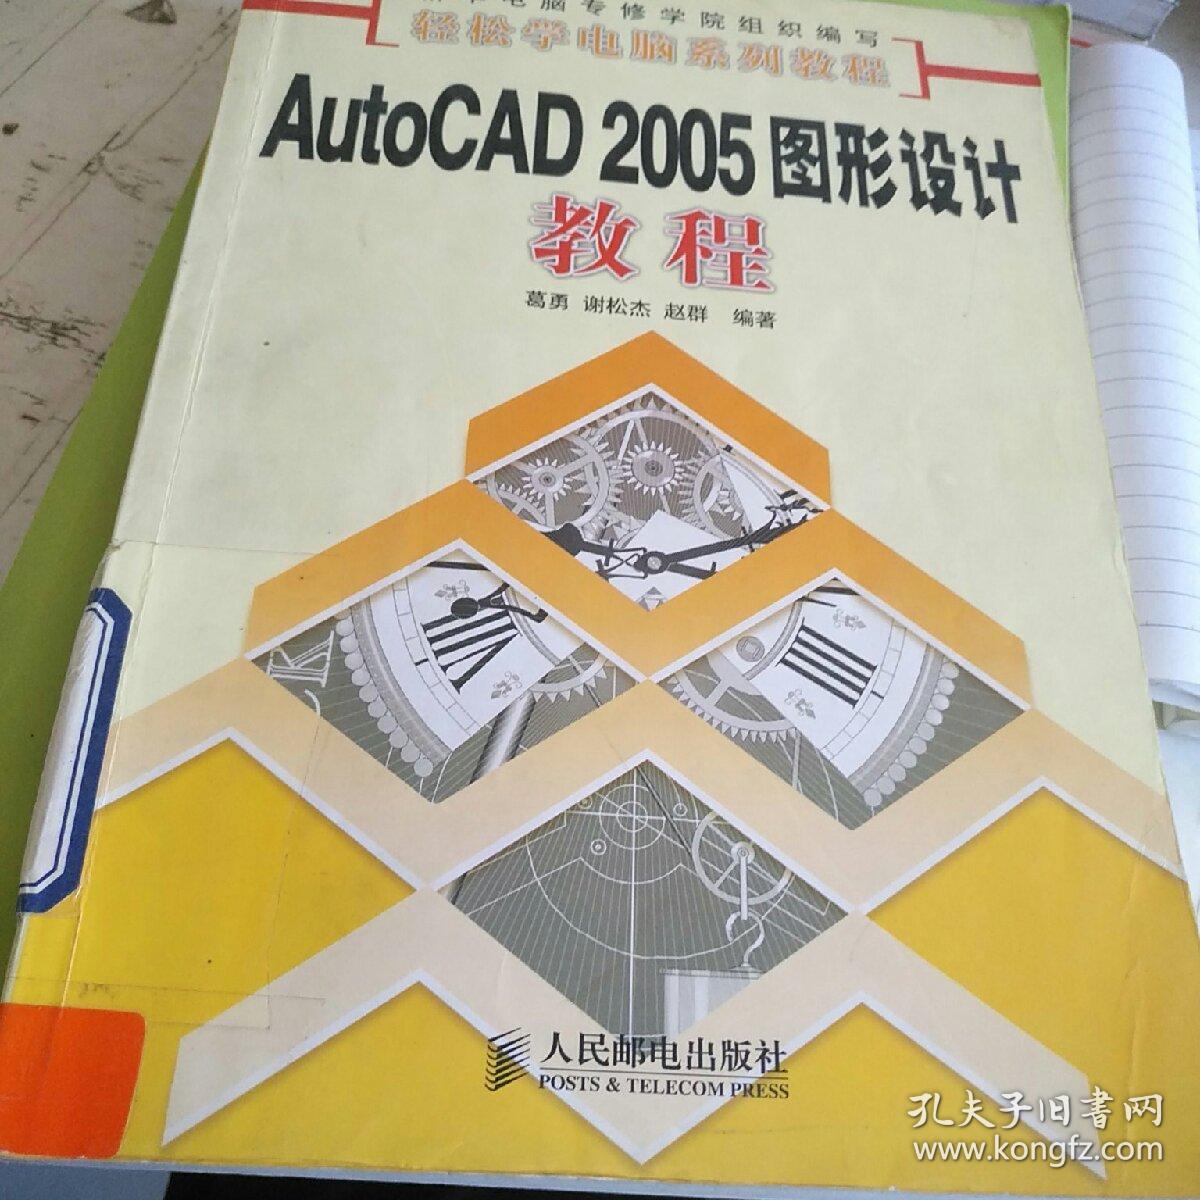 AutoCAD 2005图形设计教程